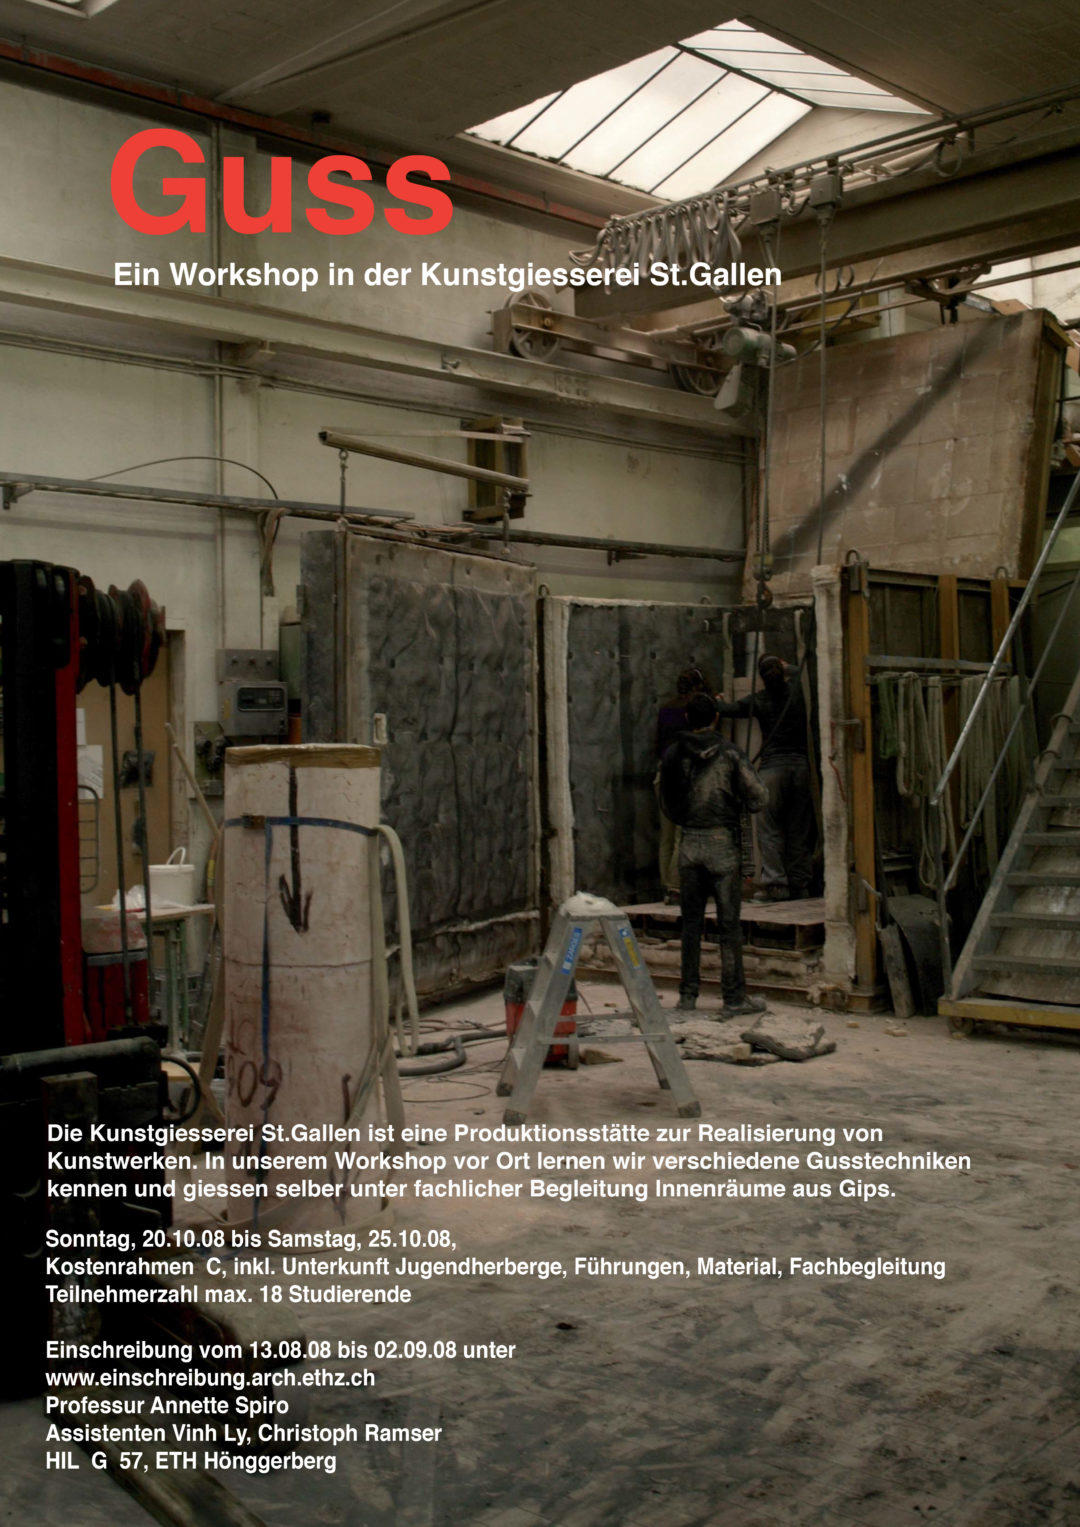 Guss. Workshop Kunstgiesserei St. Gallen